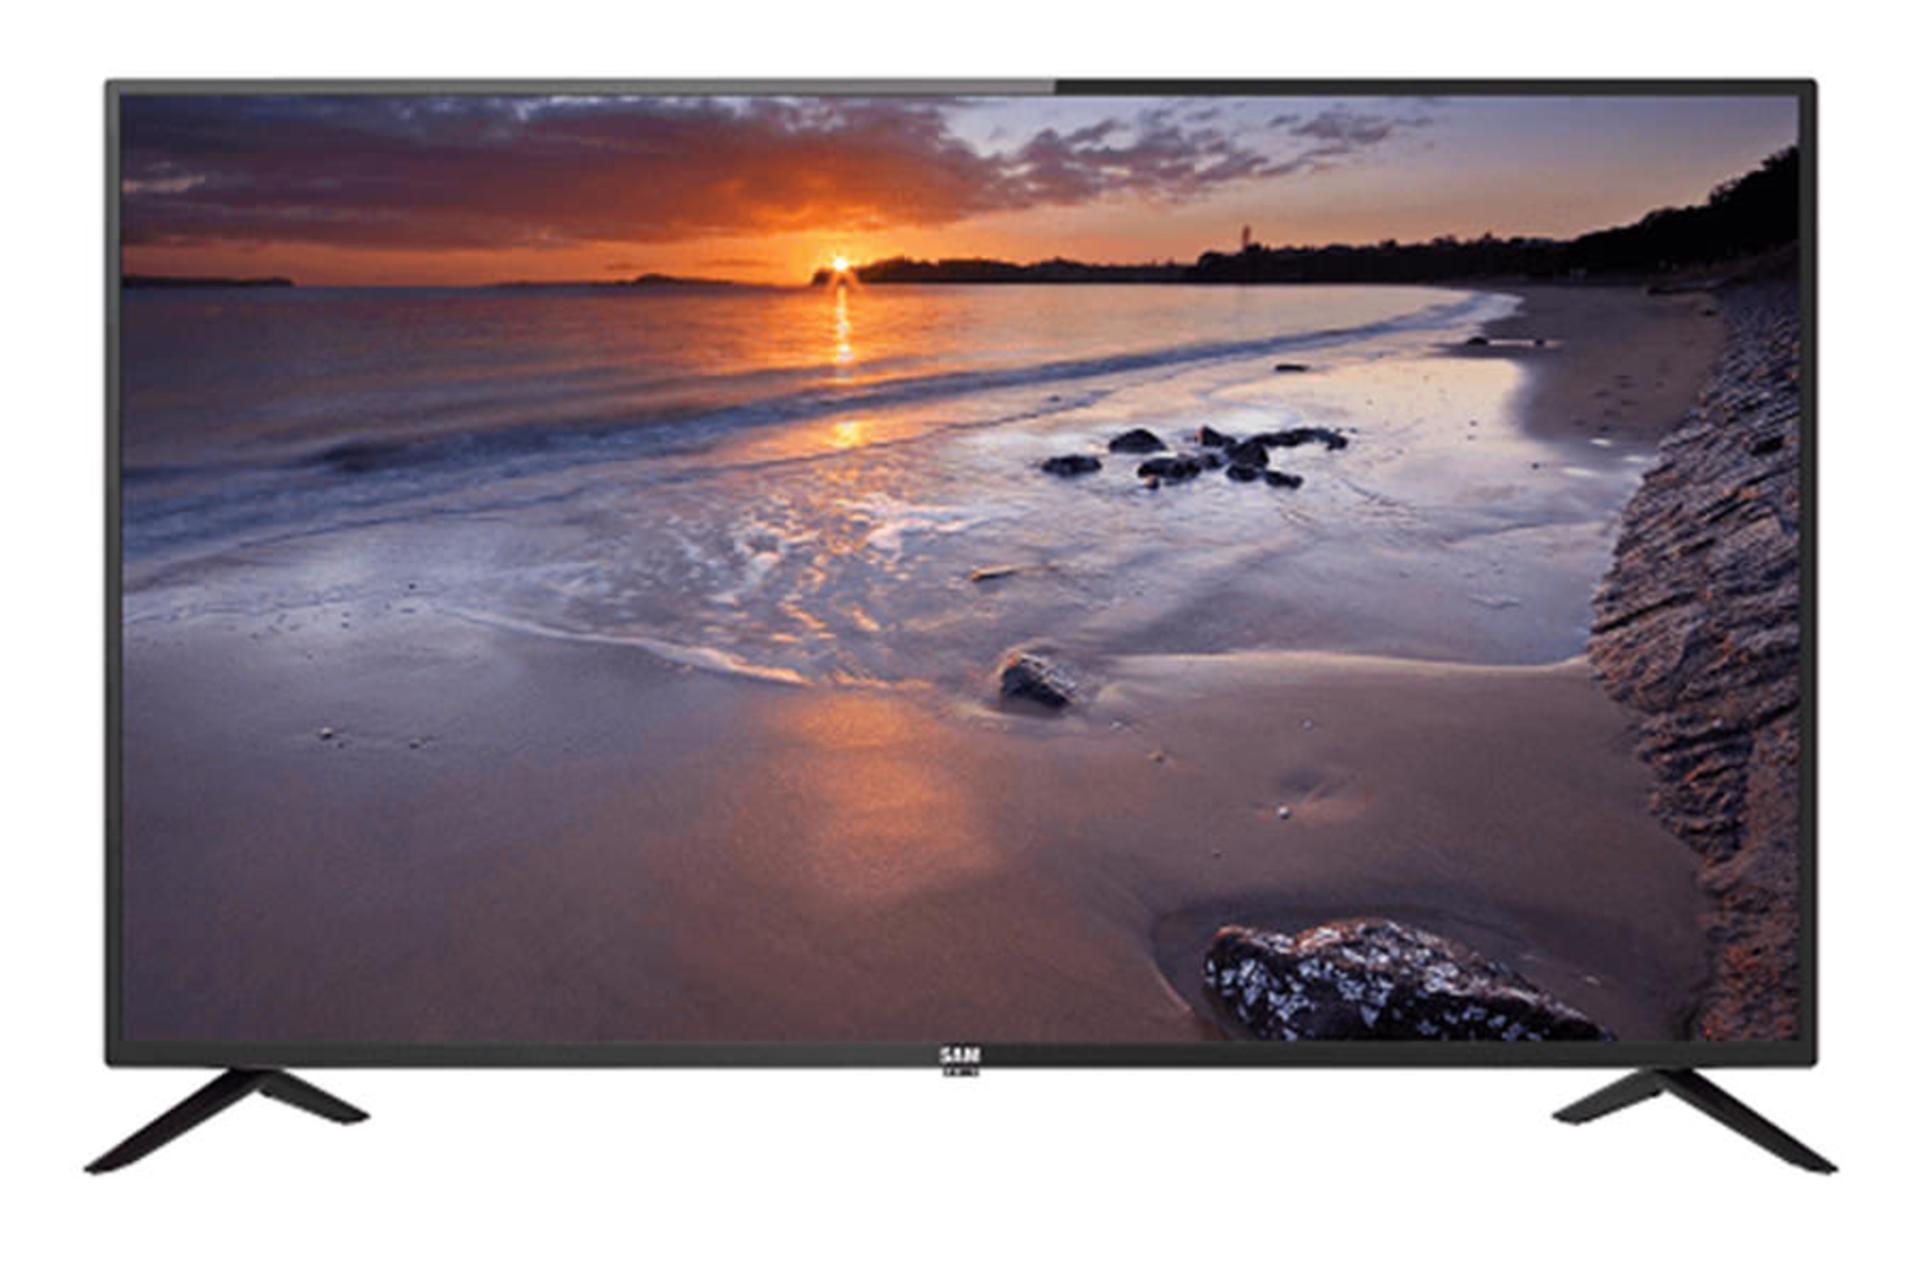 قیمت تلویزیون سام الکترونیک T5150 مدل 43 اینچ + مشخصات